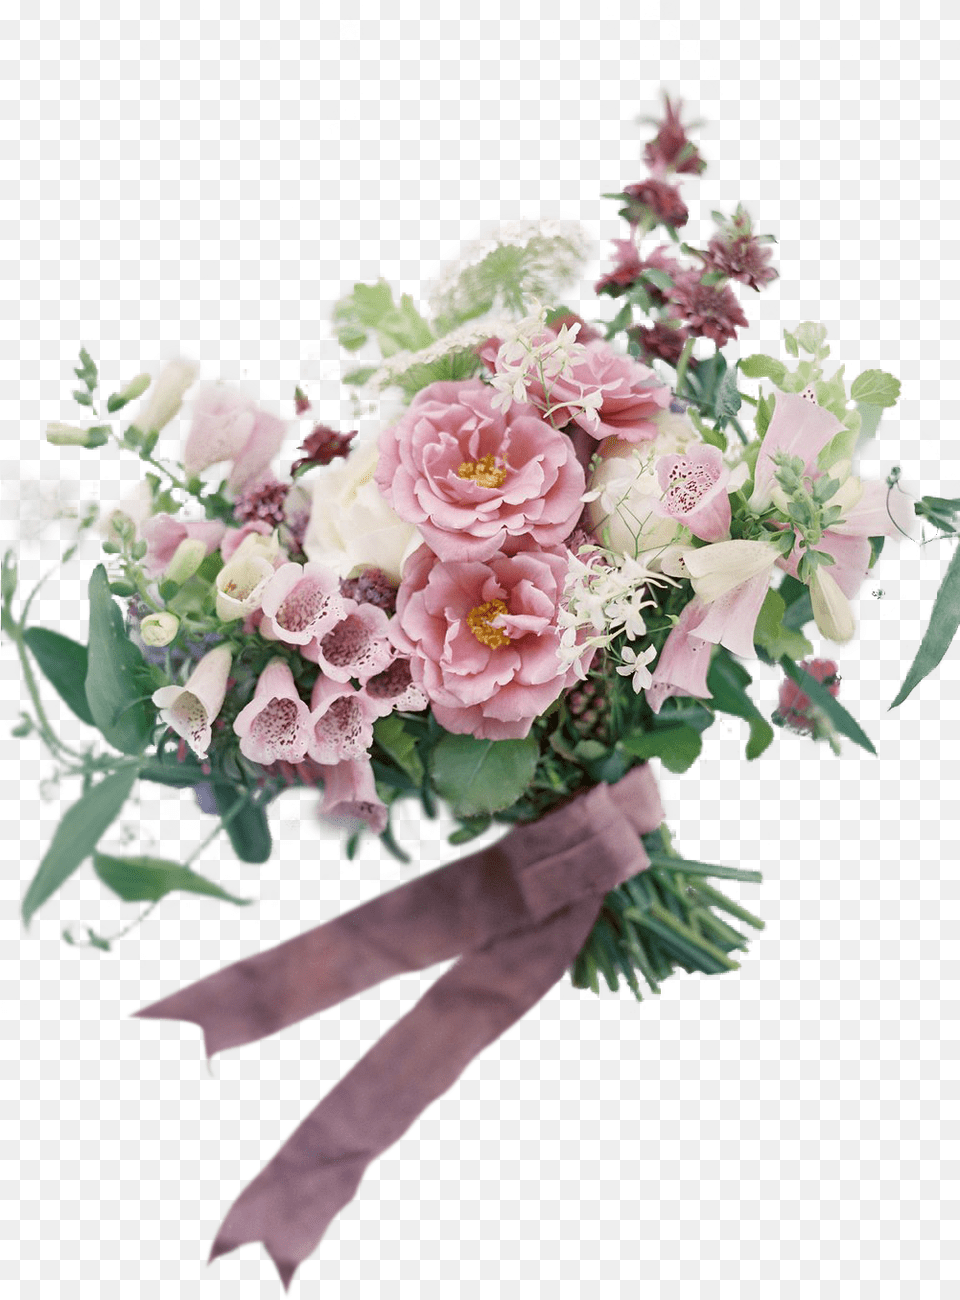 Flower Bouquet, Art, Floral Design, Flower Arrangement, Flower Bouquet Free Transparent Png